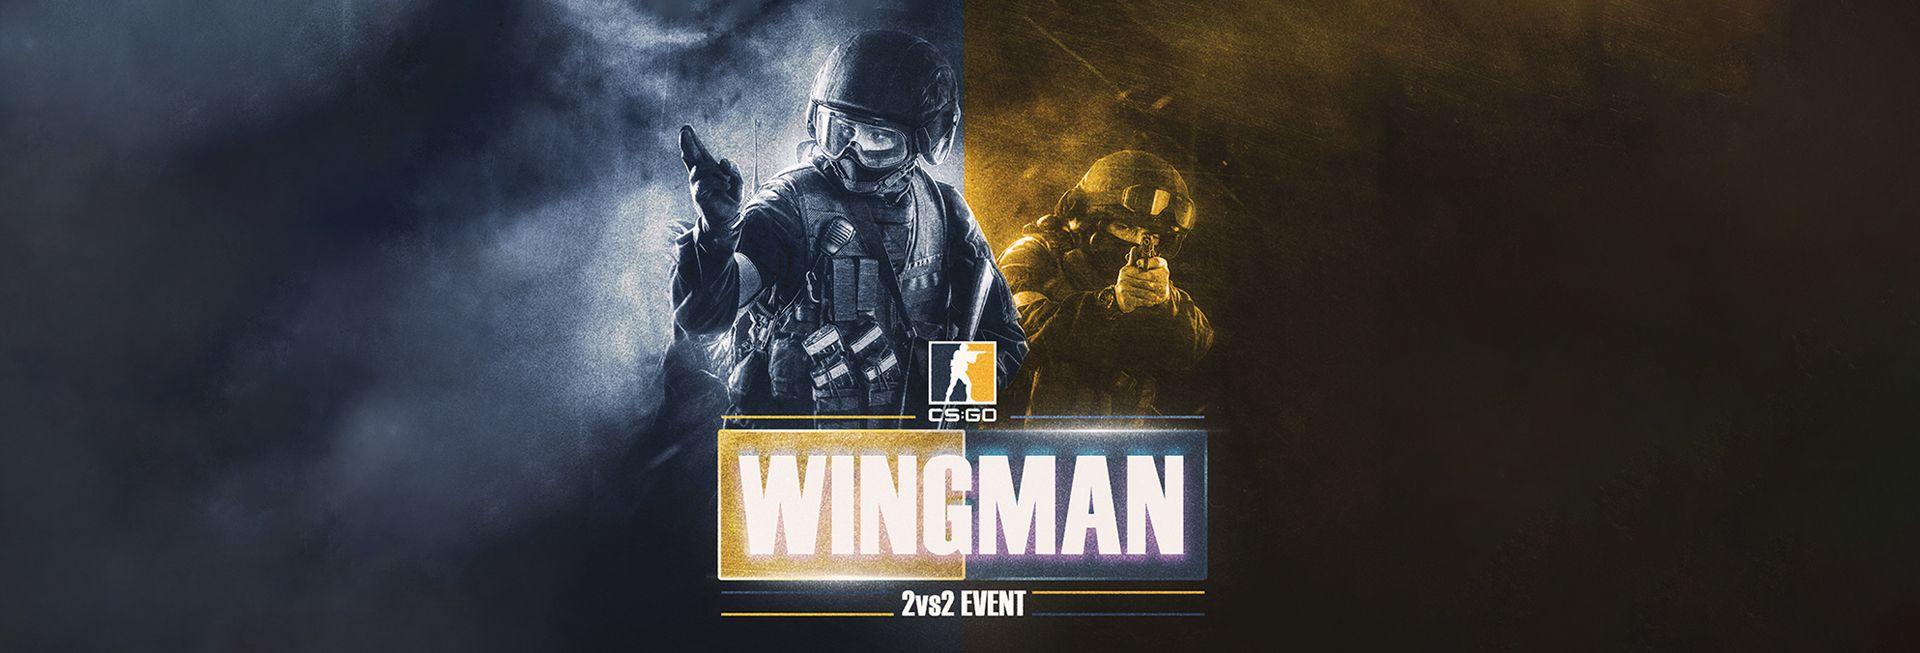 Wingman 2v2